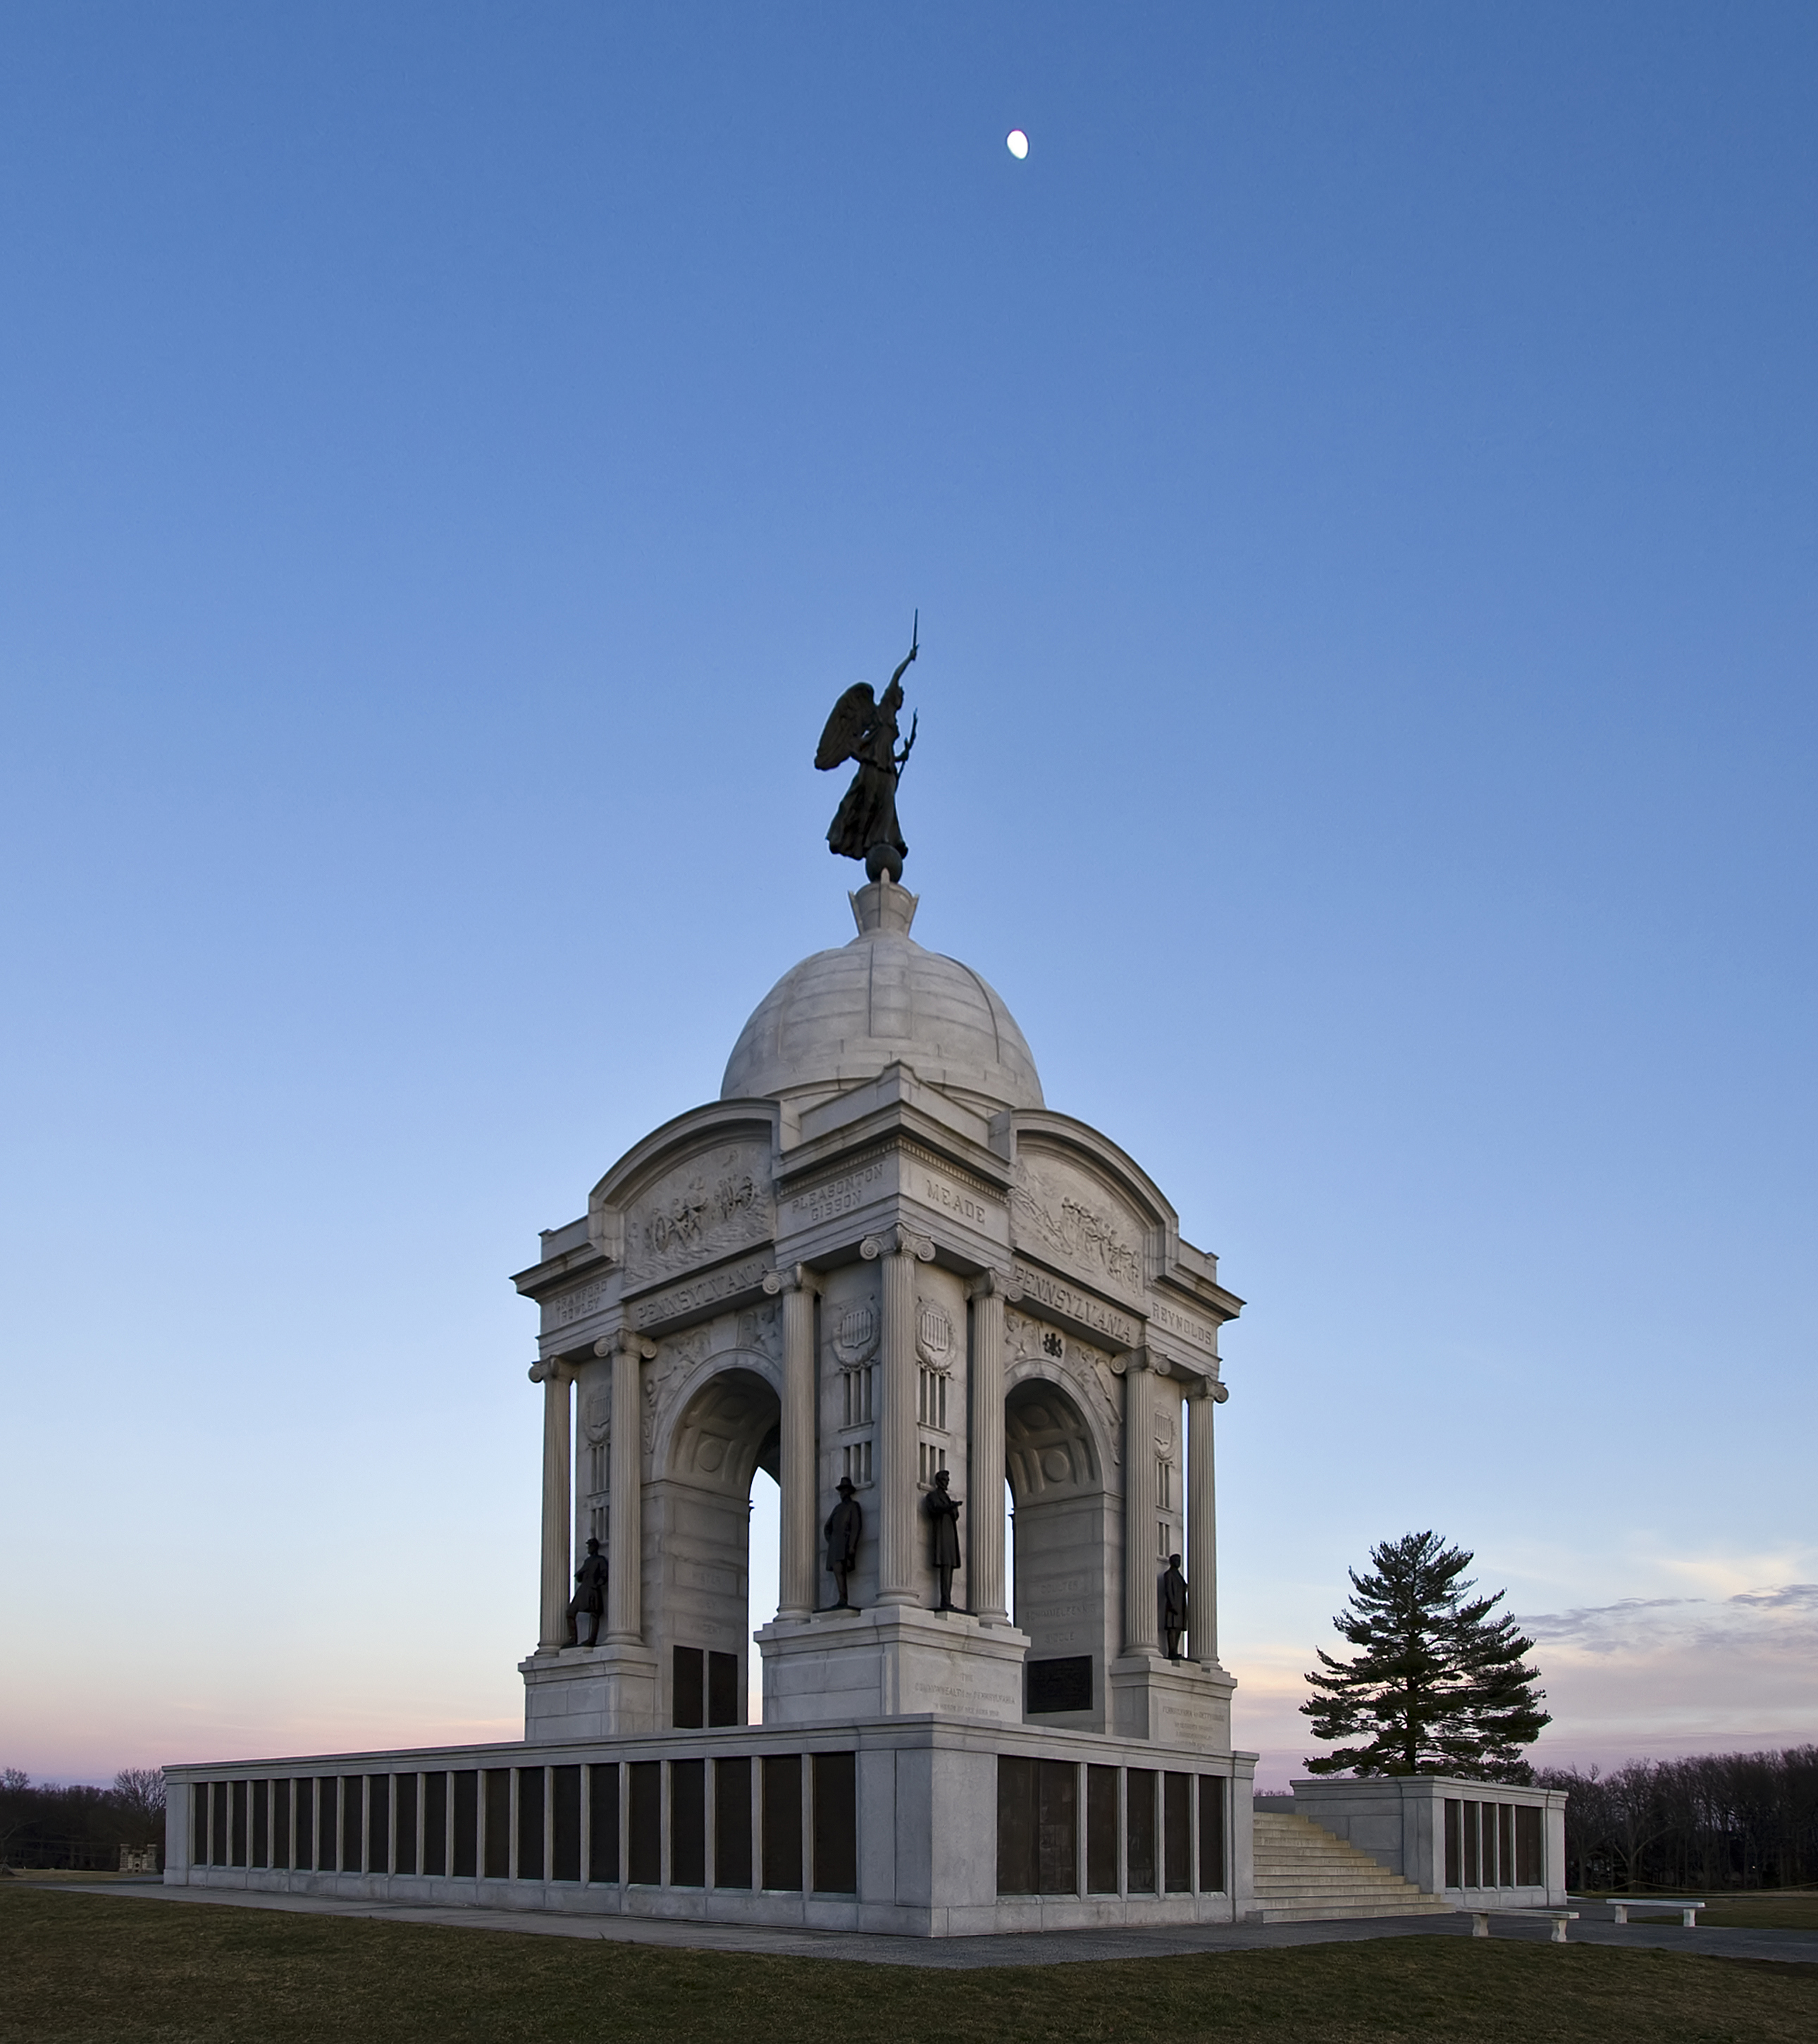 File:Pennsylvania Memorial Gettysburg PA1.jpg - Wikimedia Commons